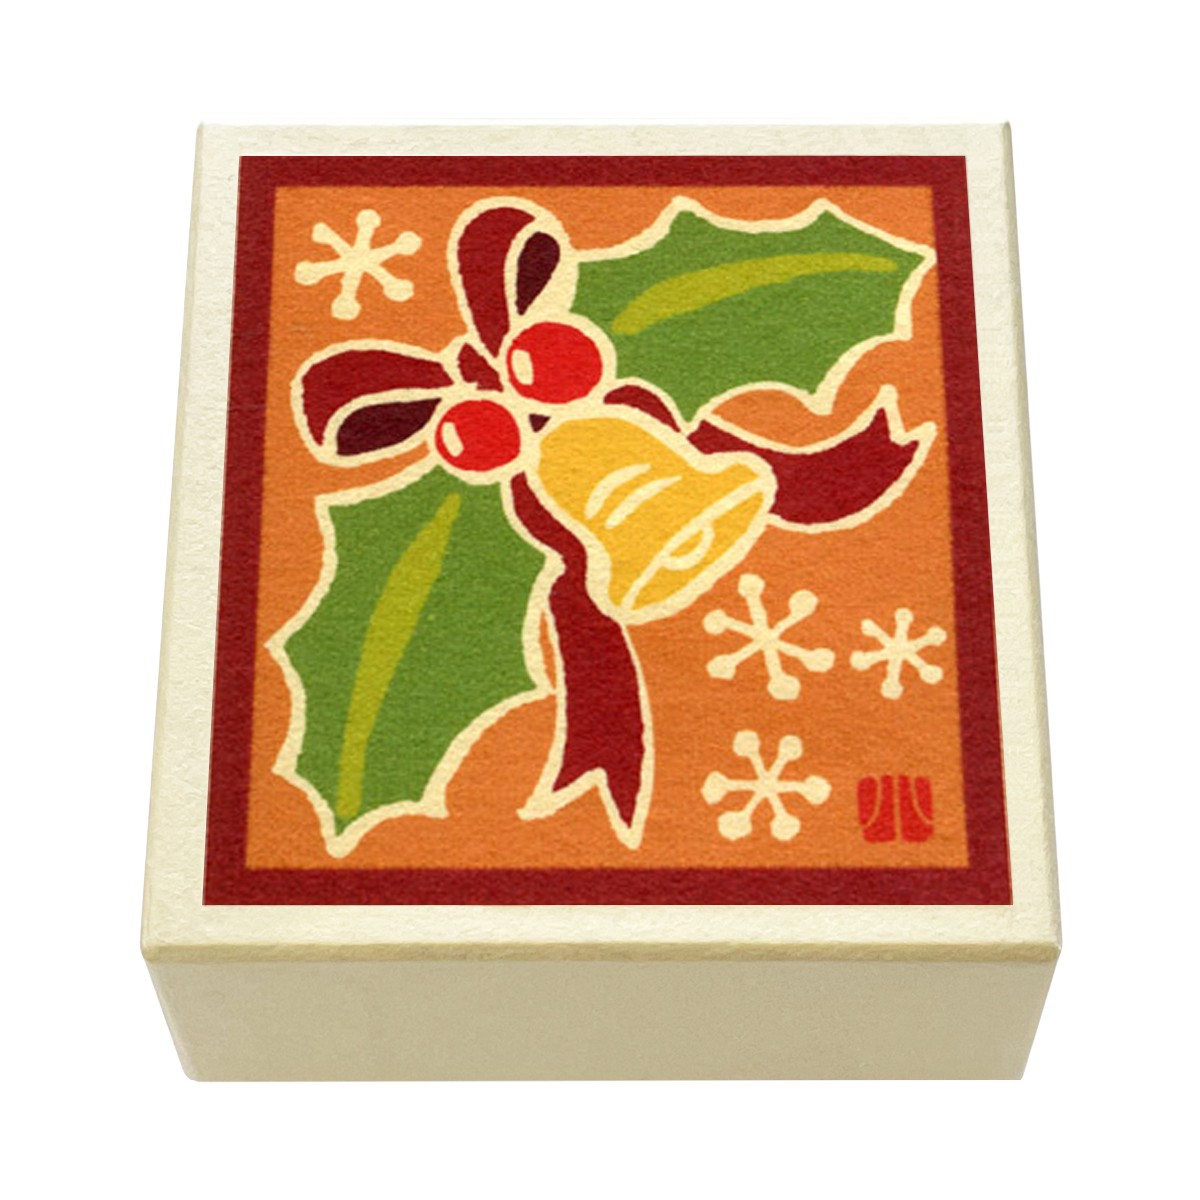 版画紙箱 おはこ 季節のおはこ 師走 クリスマス 小泉タツジ ヒイラギ飾り